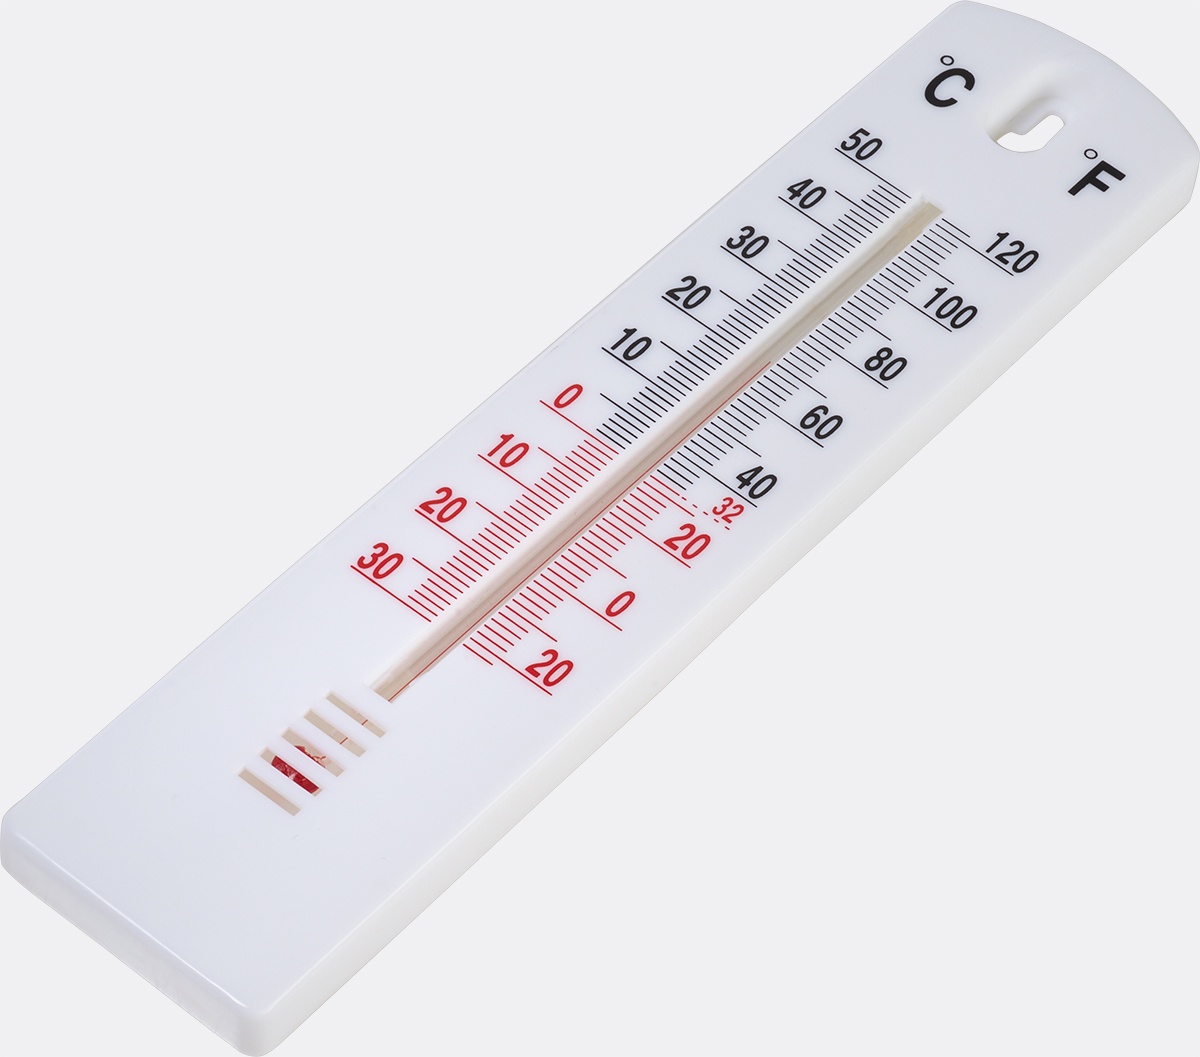 Комнатный Термометр Фото